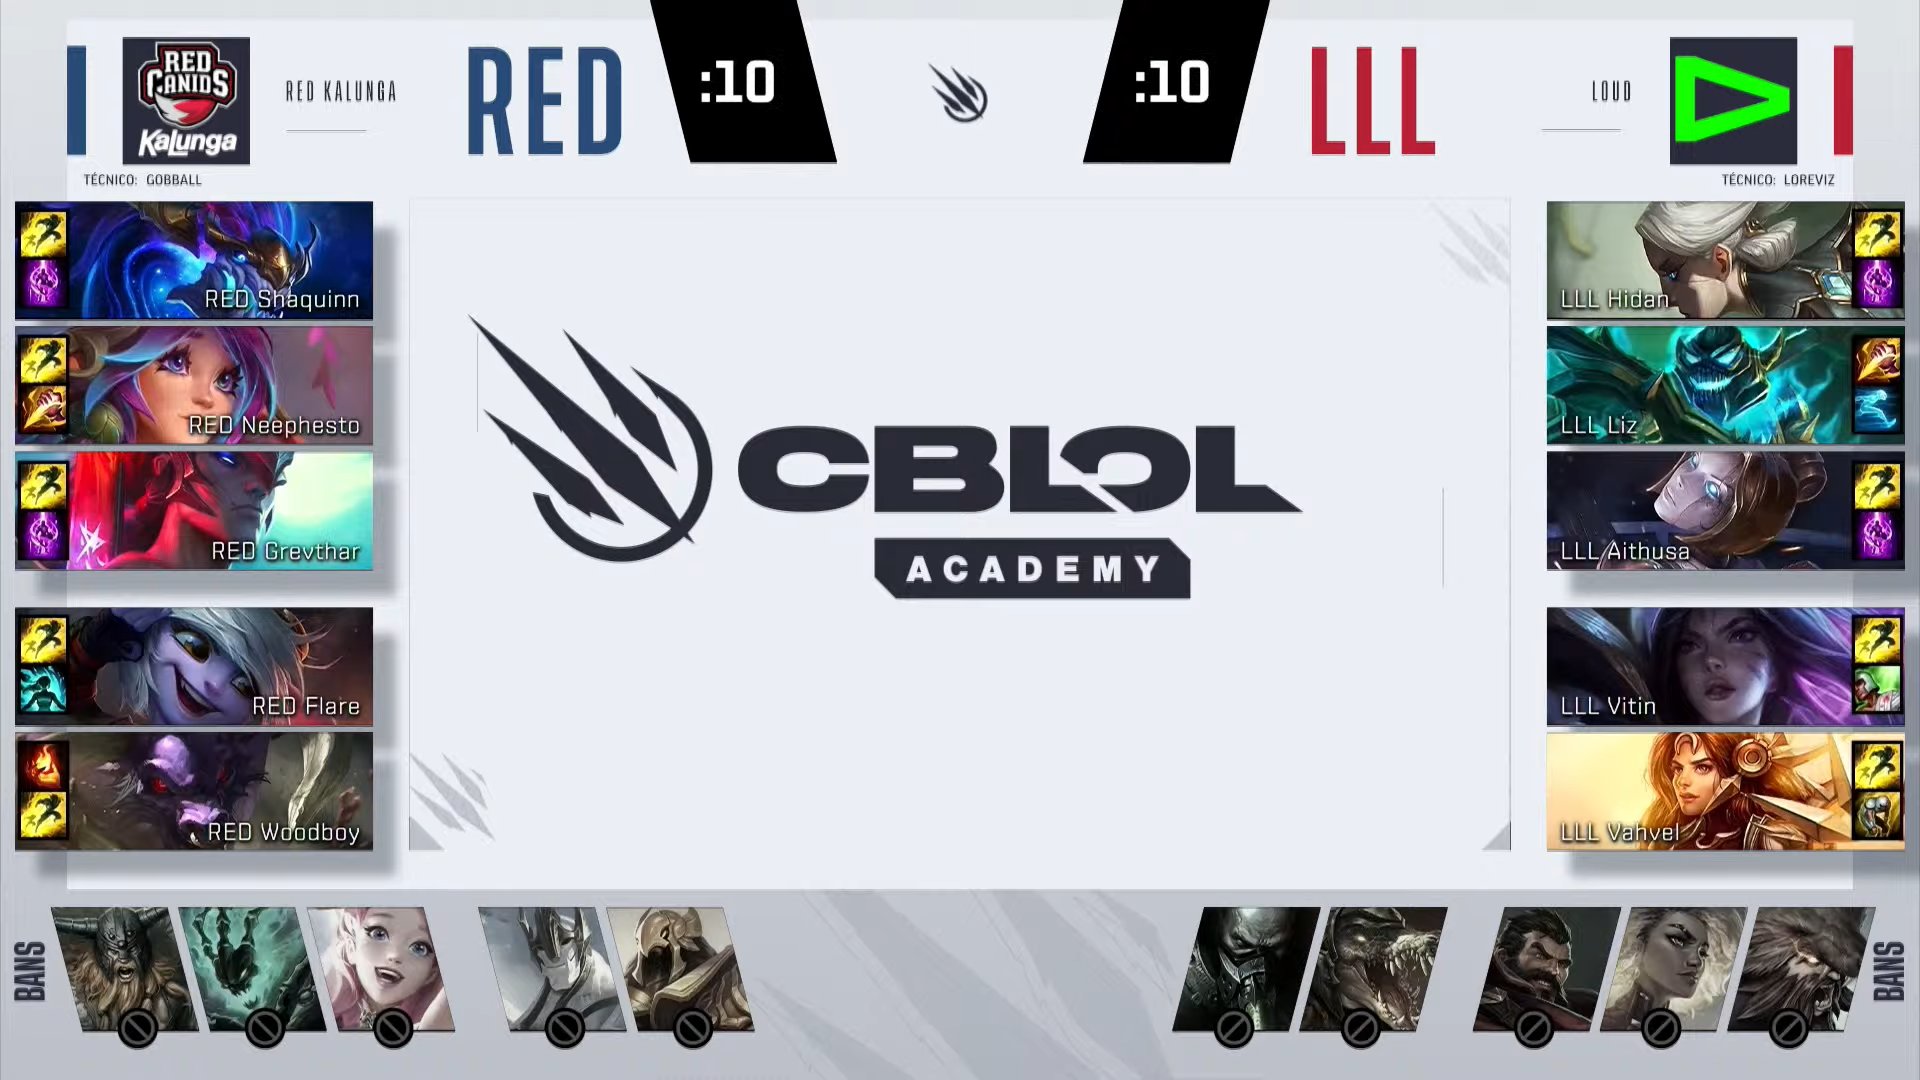 CBLOL Academy – Vorax vence e se mantém na zona de classificação!